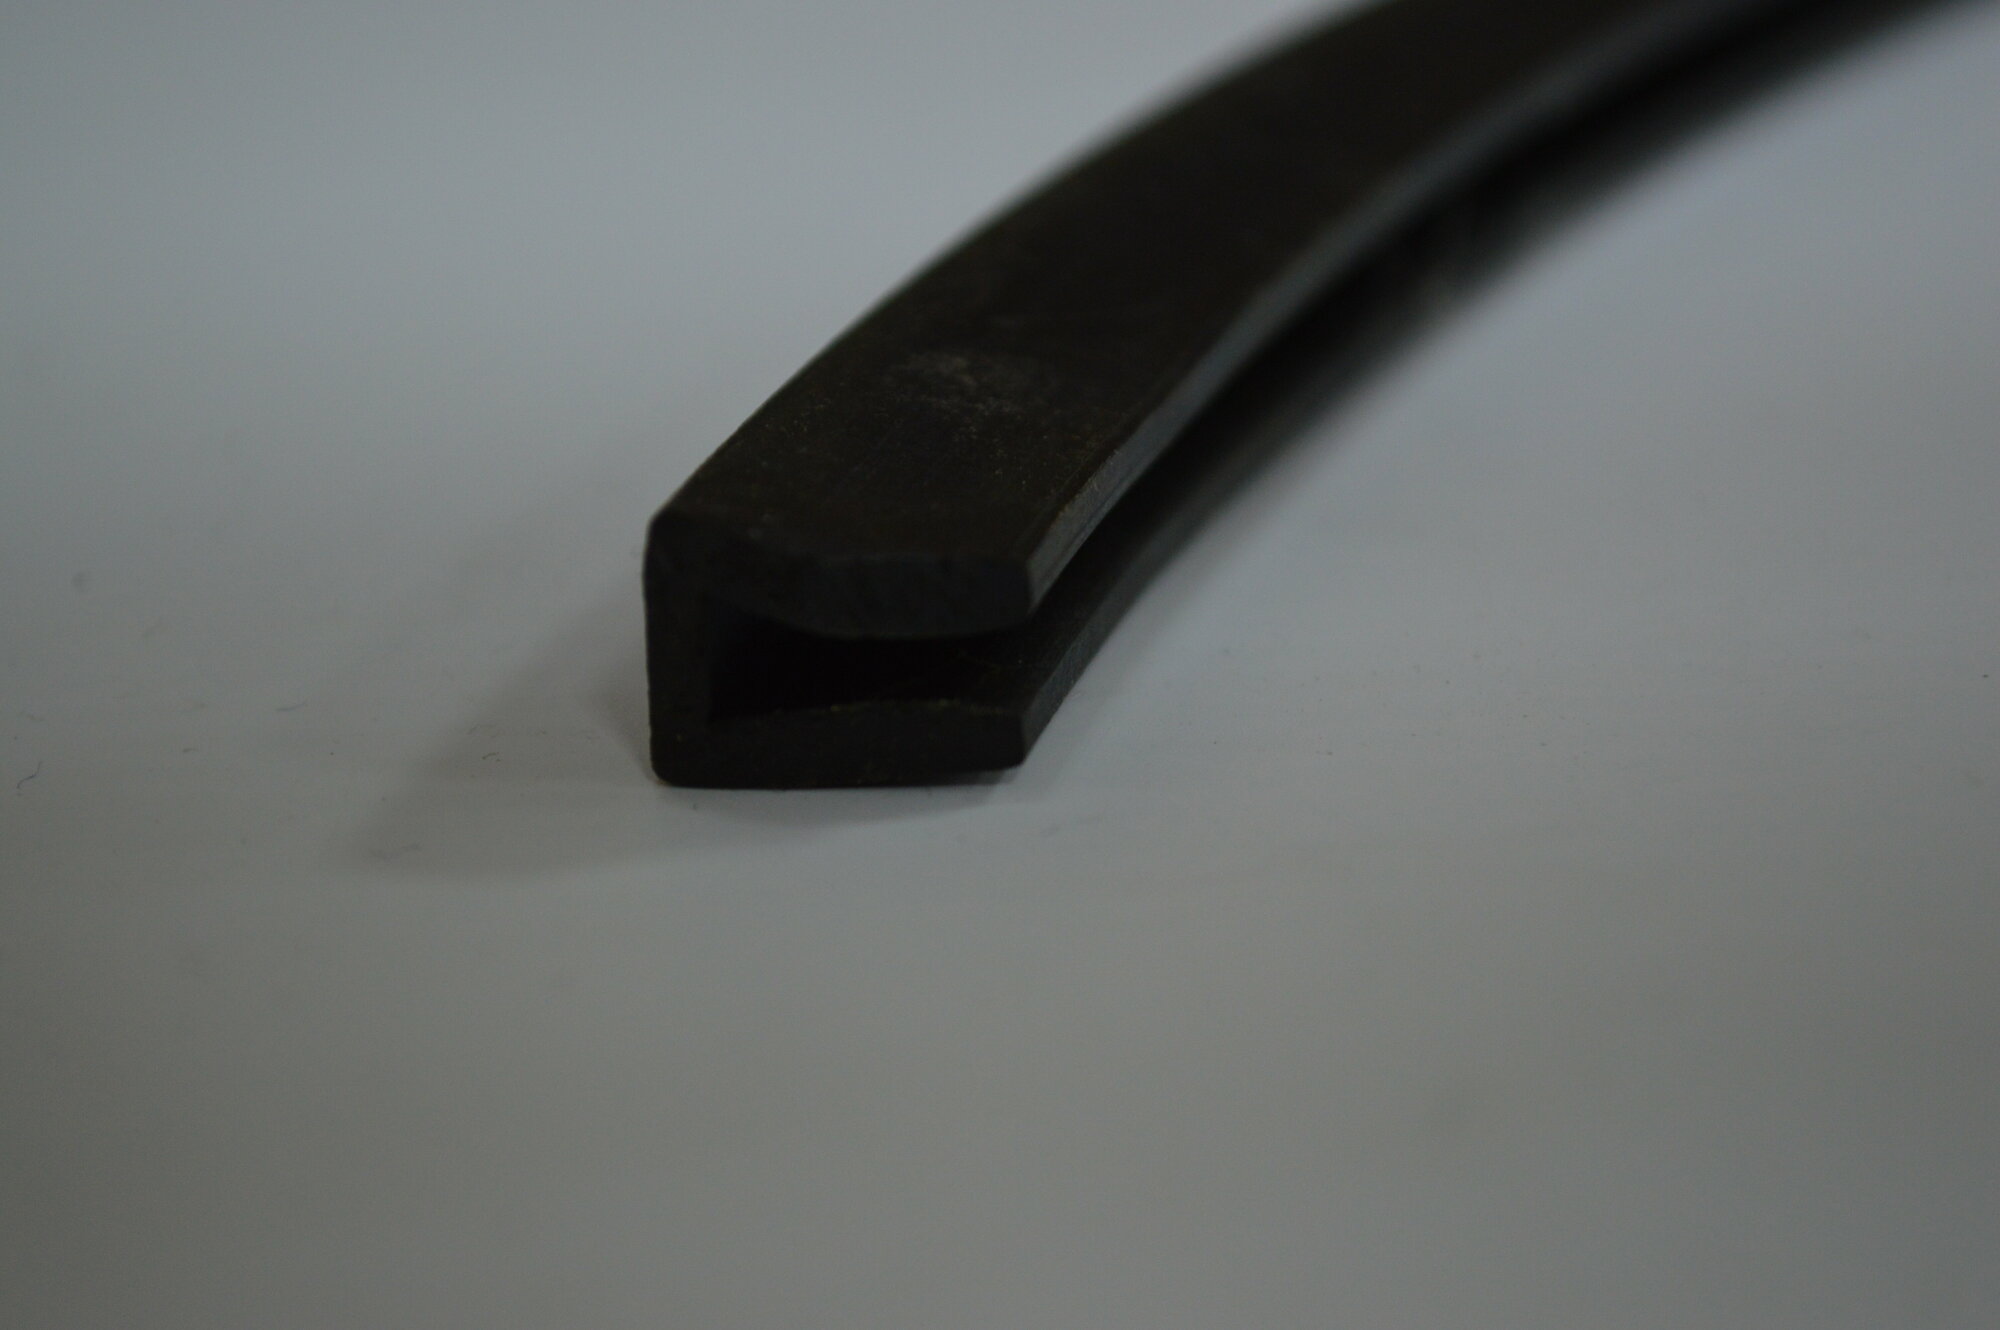 Профиль резиновый черный П-образный (14х9х4х2,5) для уплотнения стекол и метала. Толщина стекла 4 мм. Длина 3 метра.